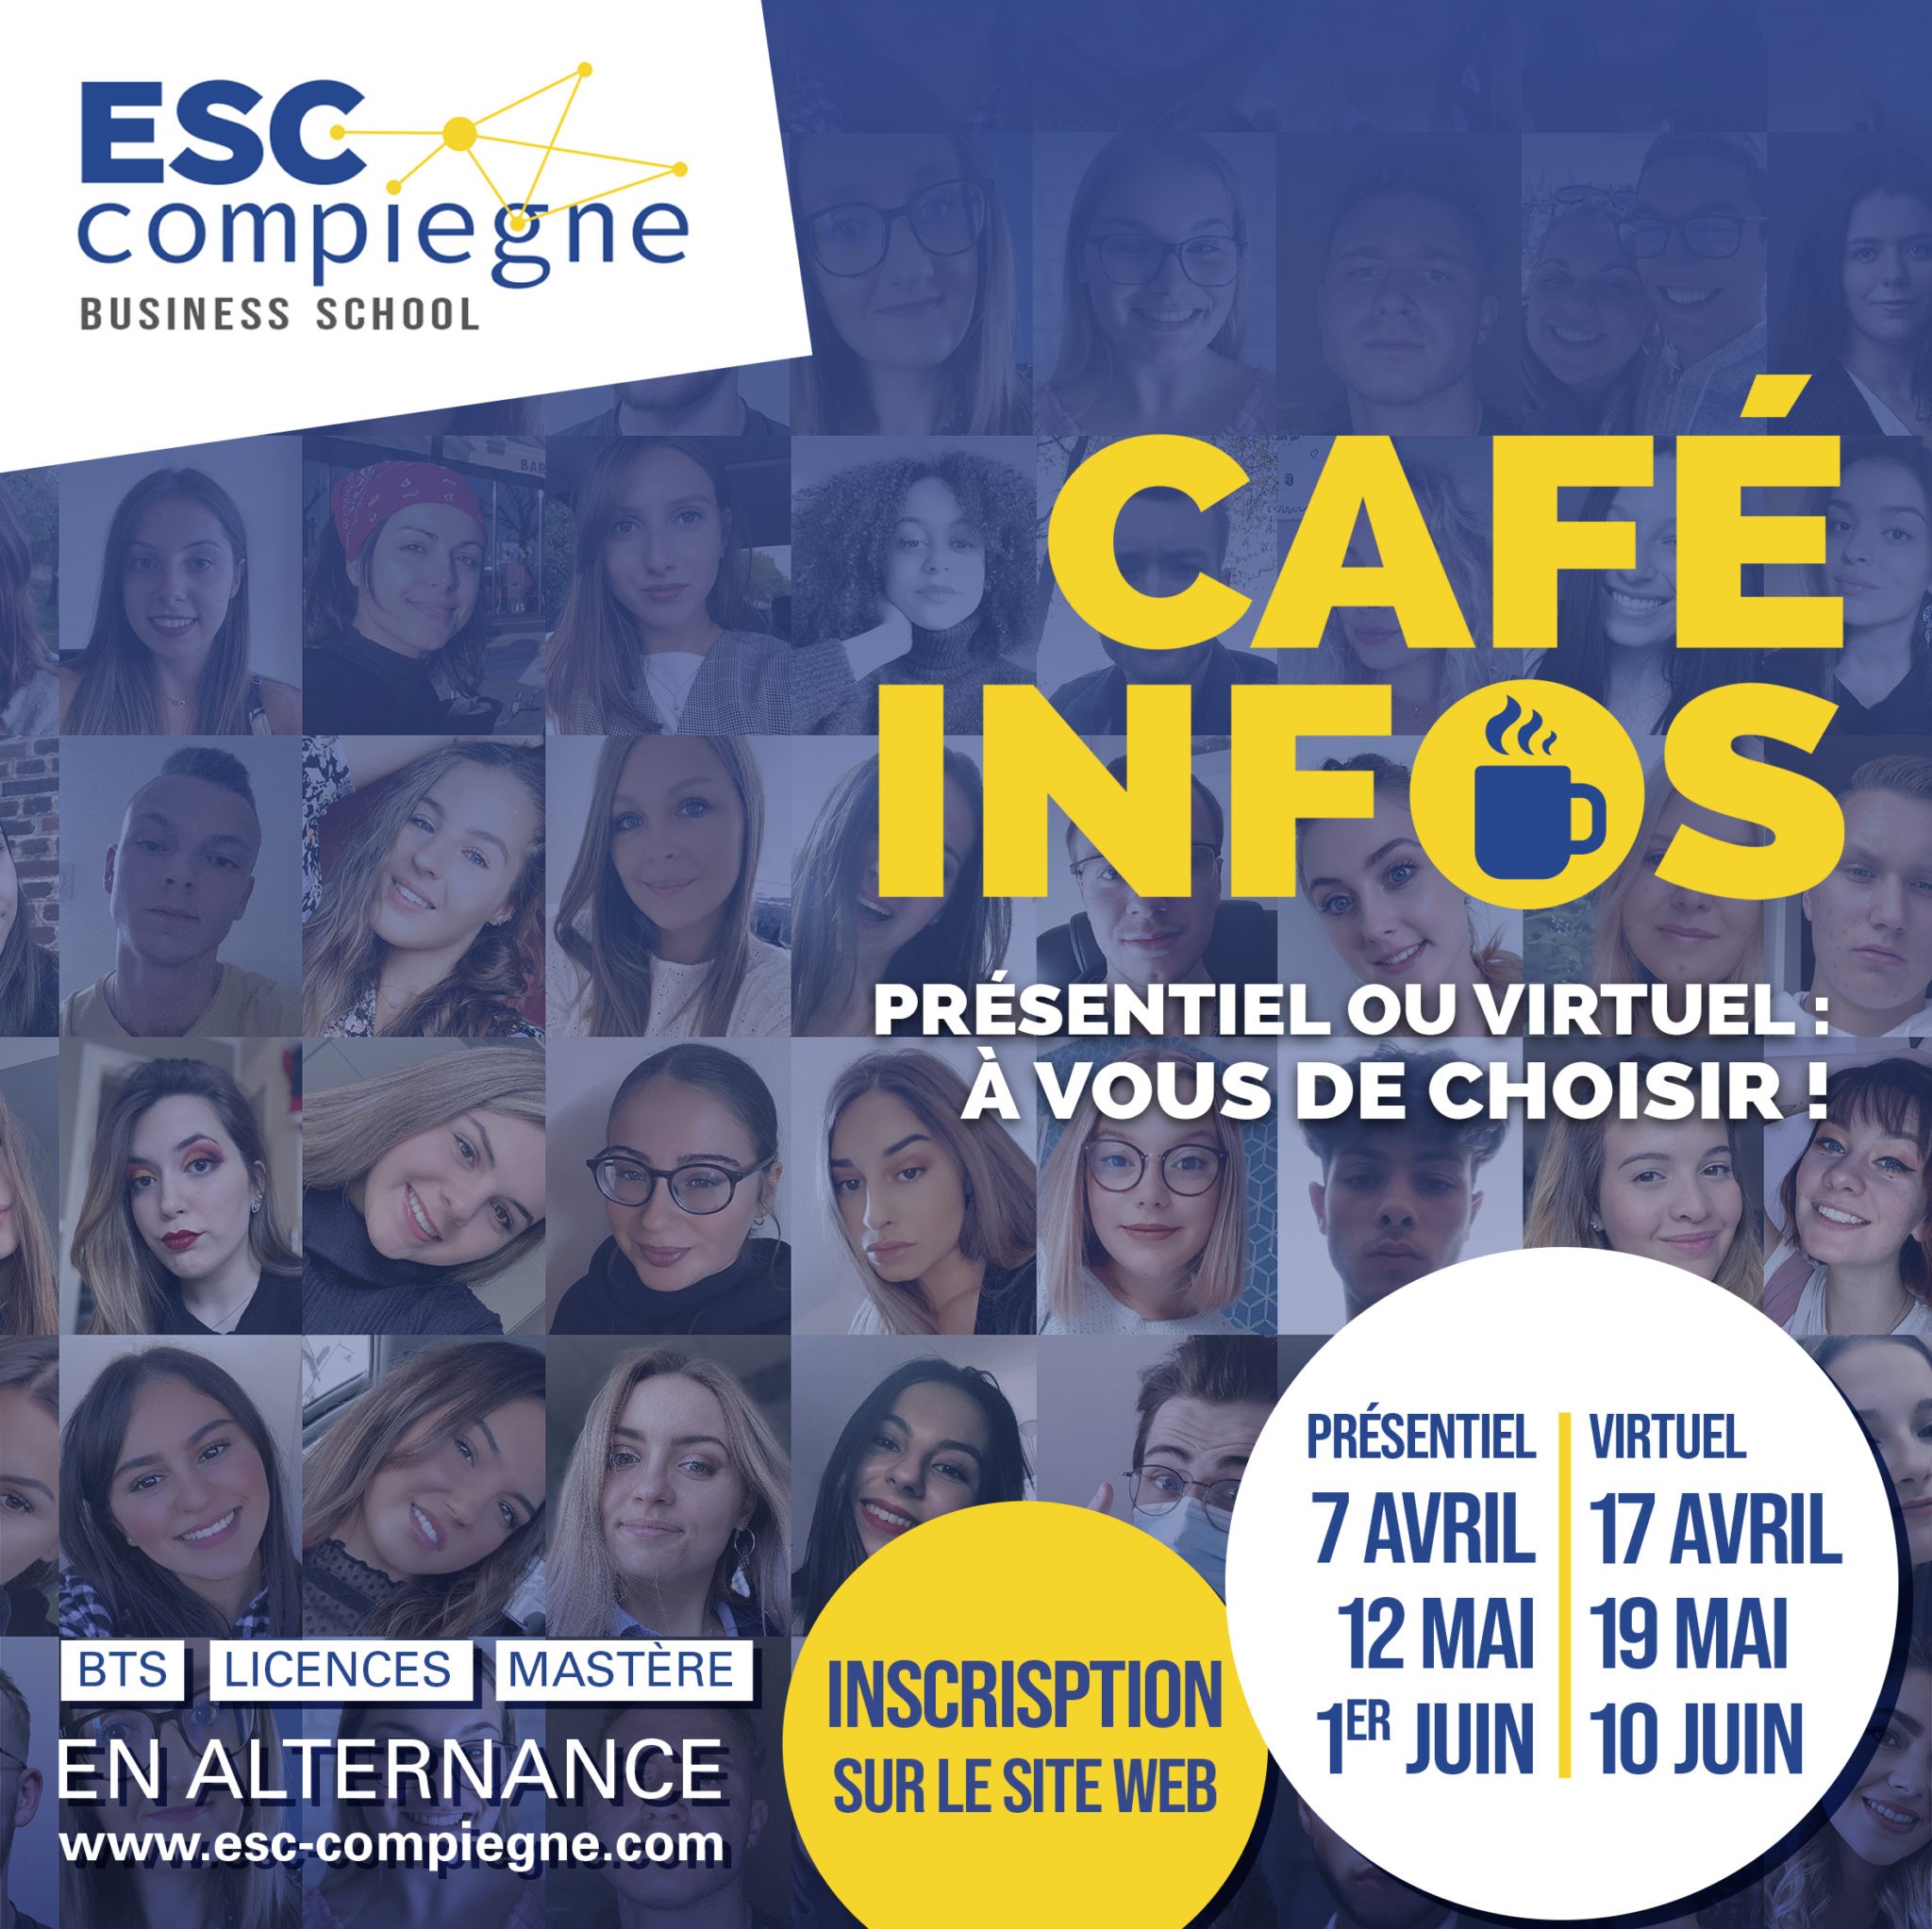 ESCC-Cafe-Infos-2021-Insta